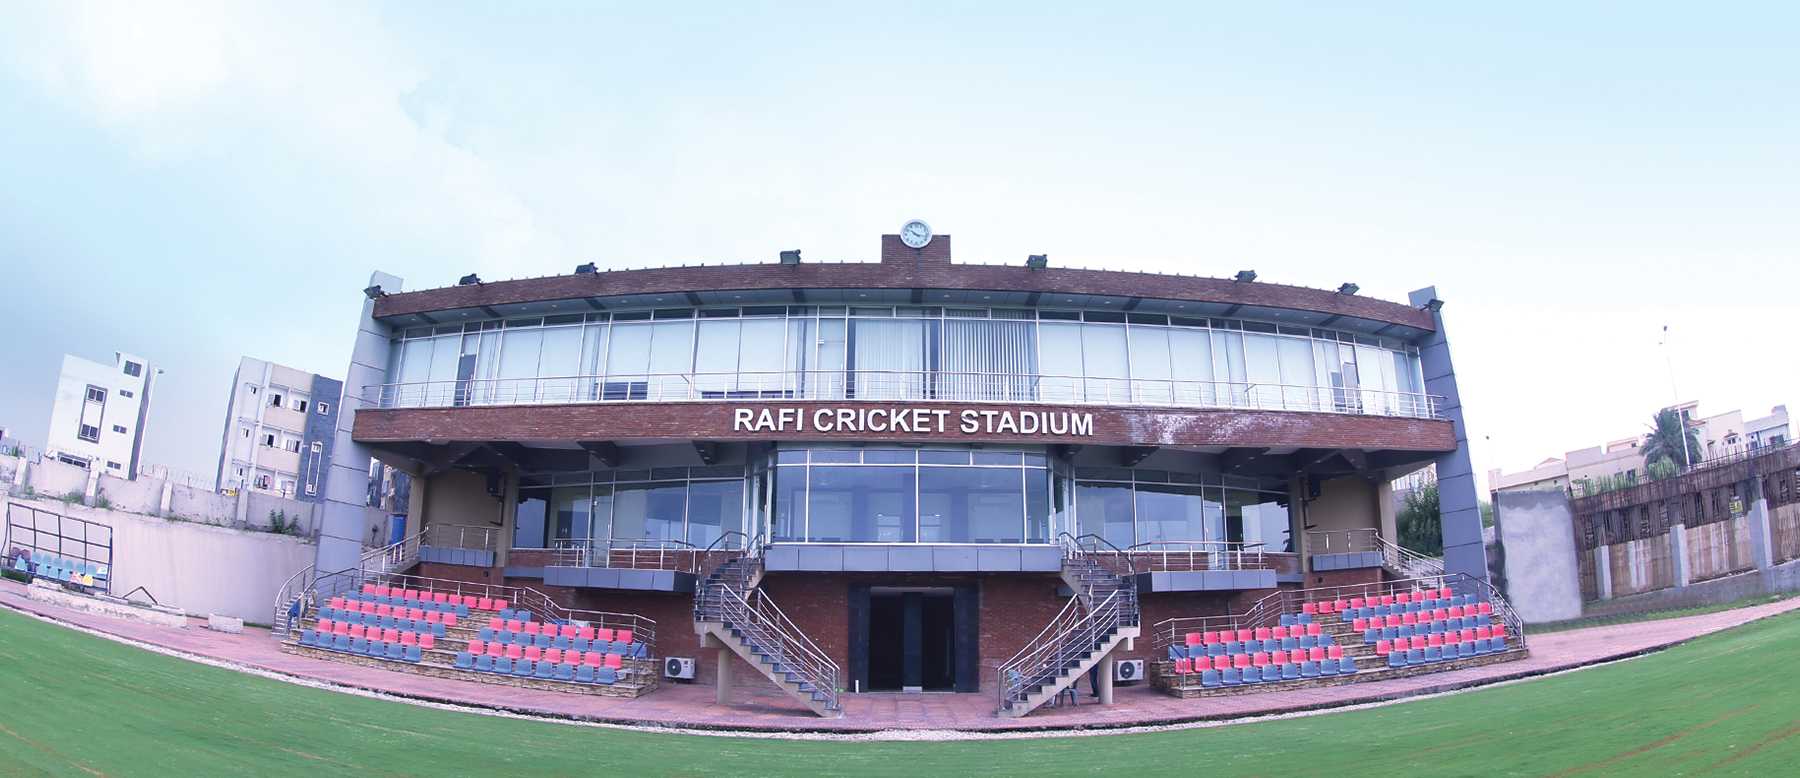 Rafi Cricket Stadium Rawalpindi